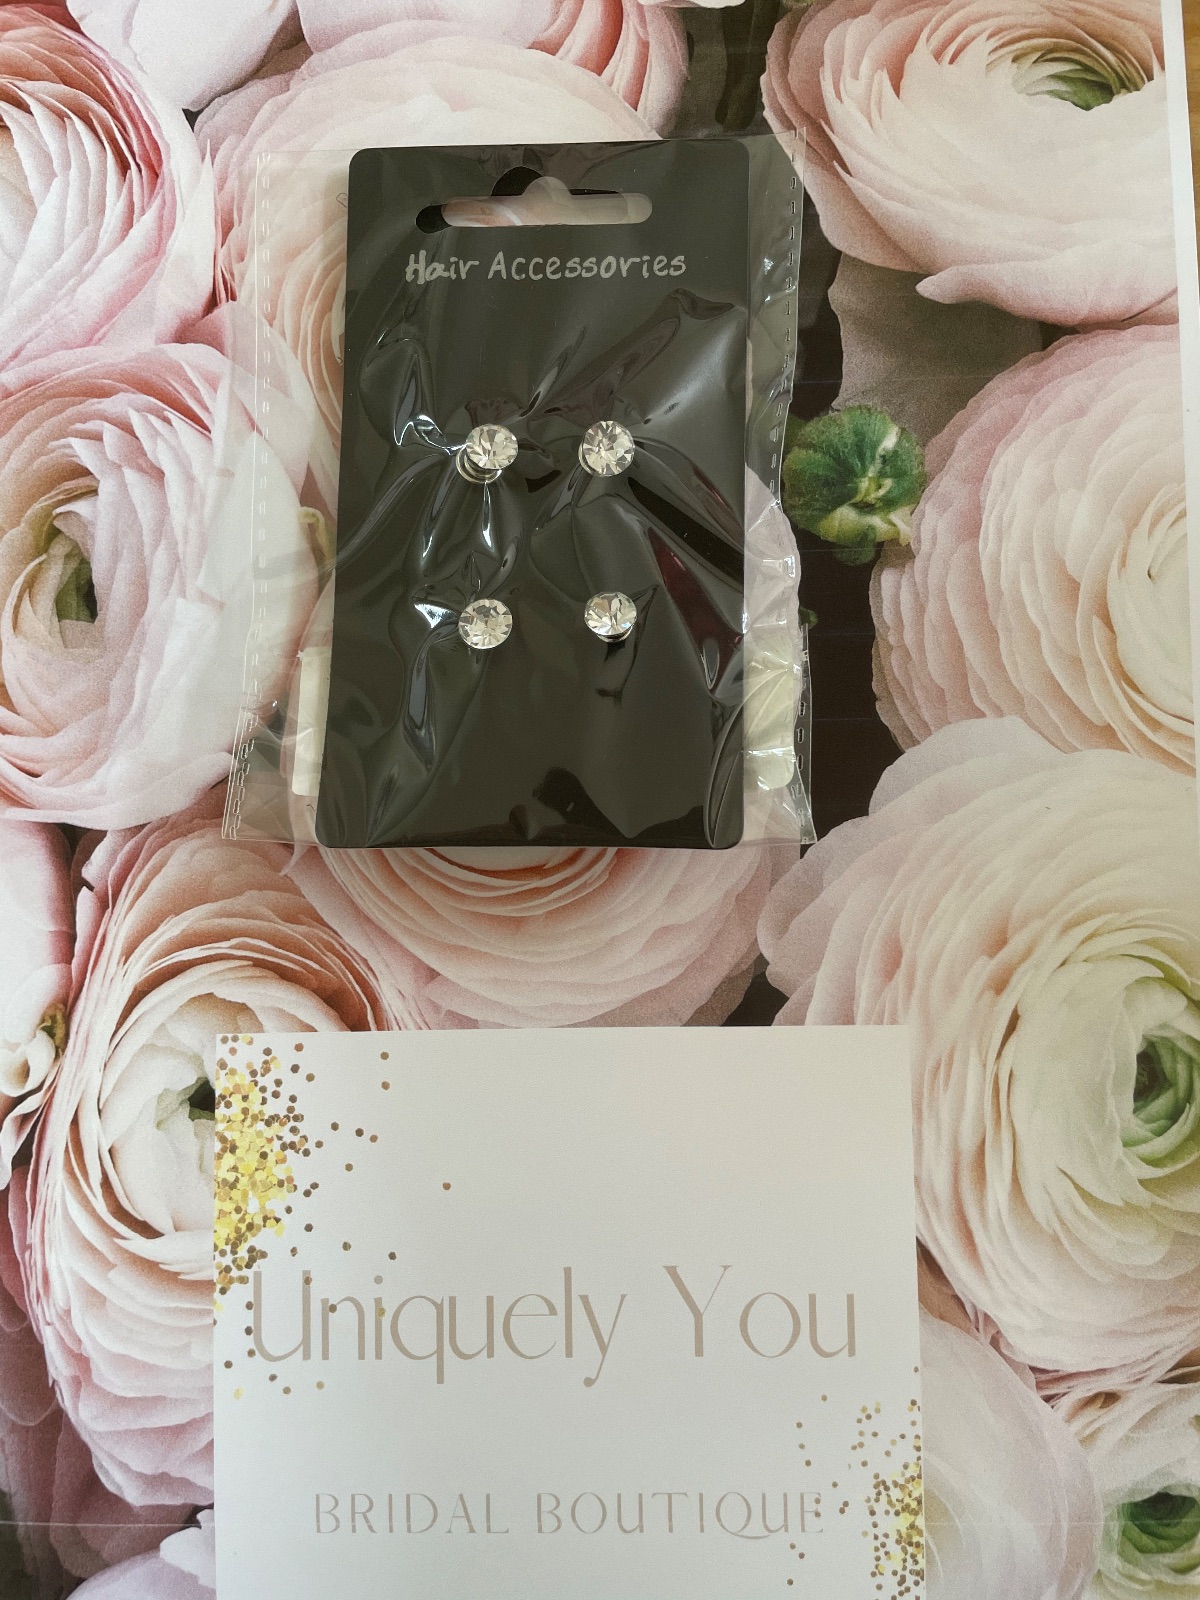 Uniquely You Bridal Boutique Limited-Image-45